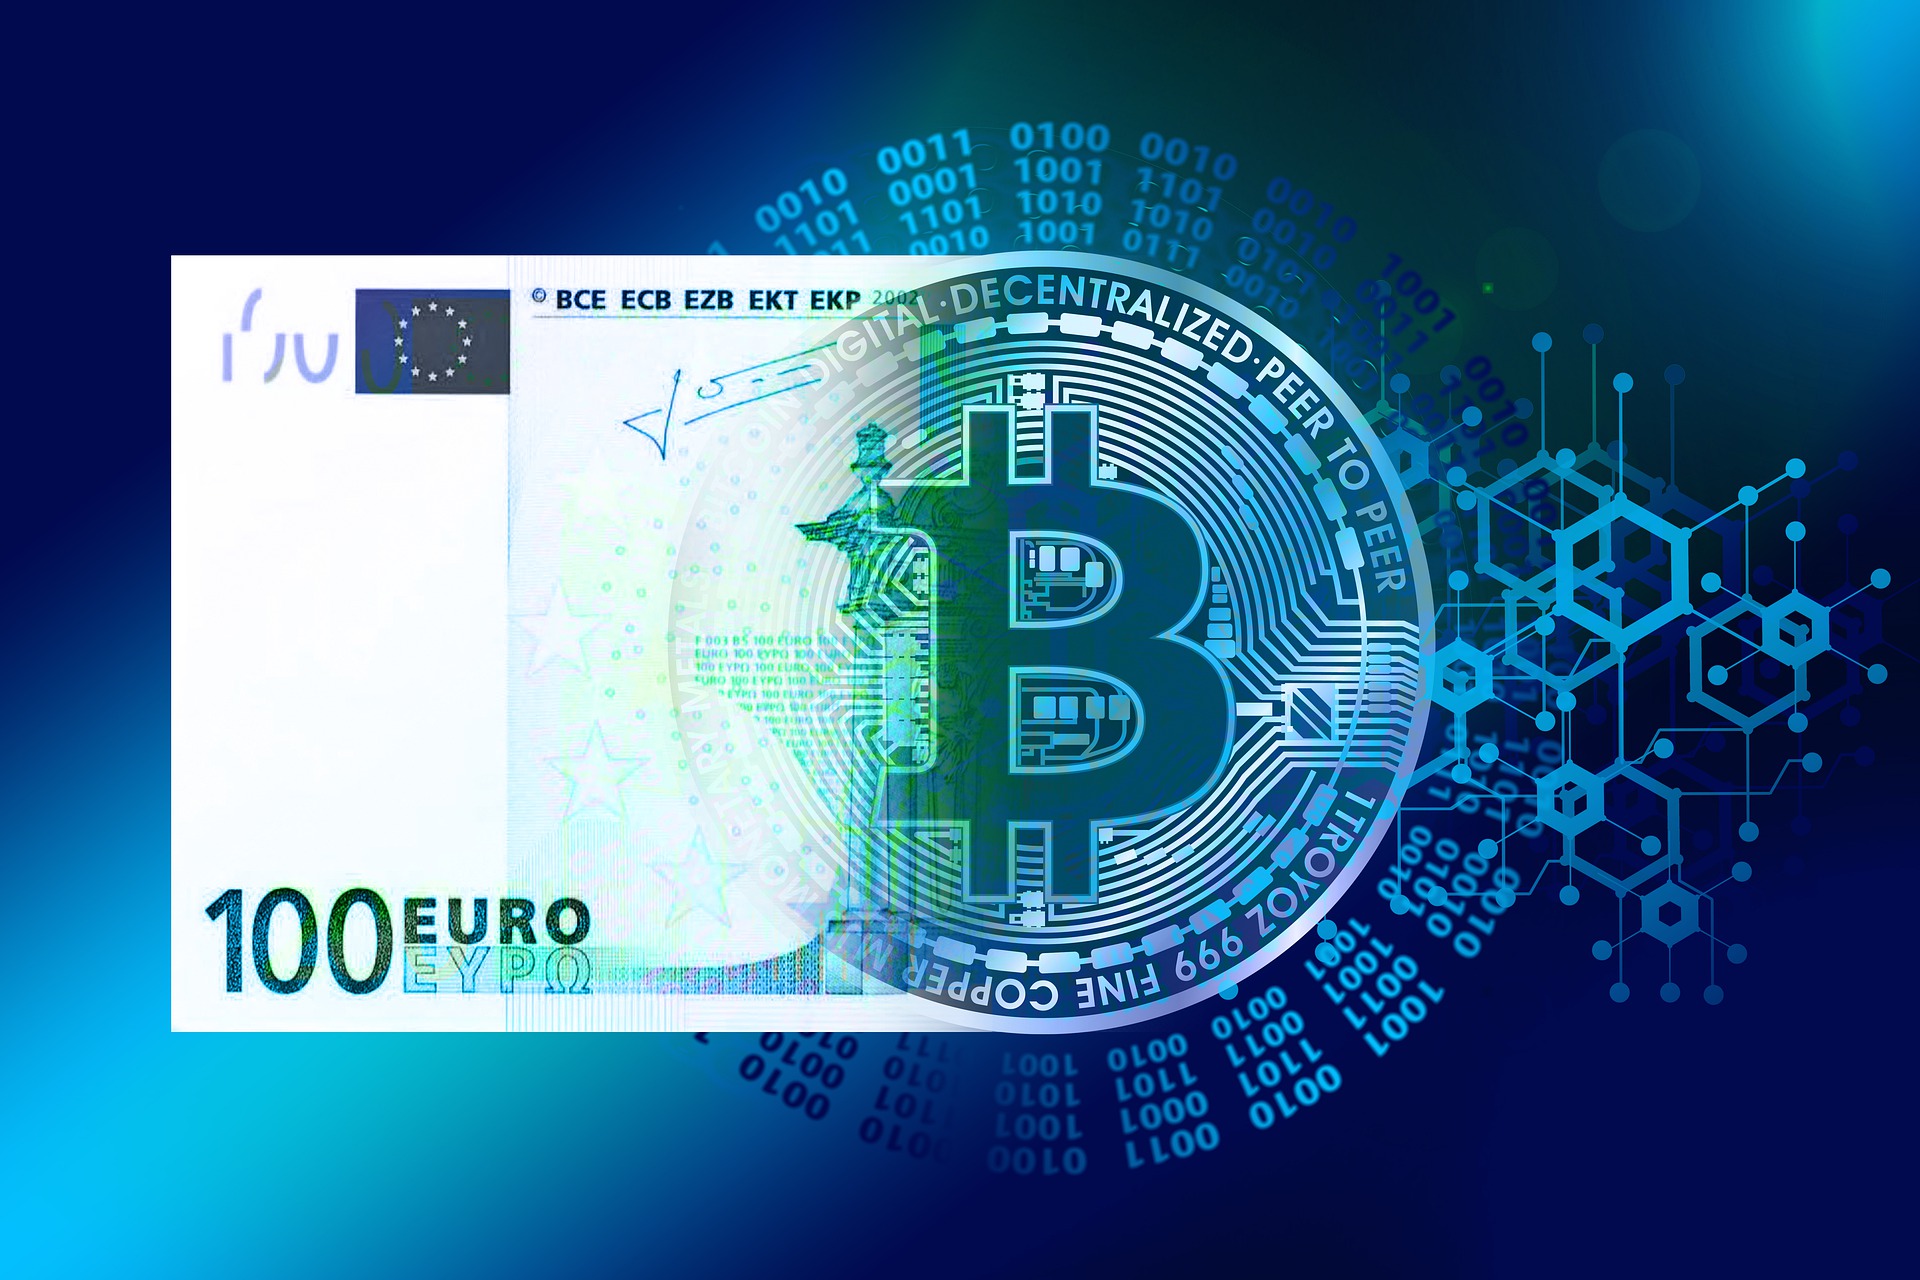 Den progressive transformation af 100 euro til en Bitcoin